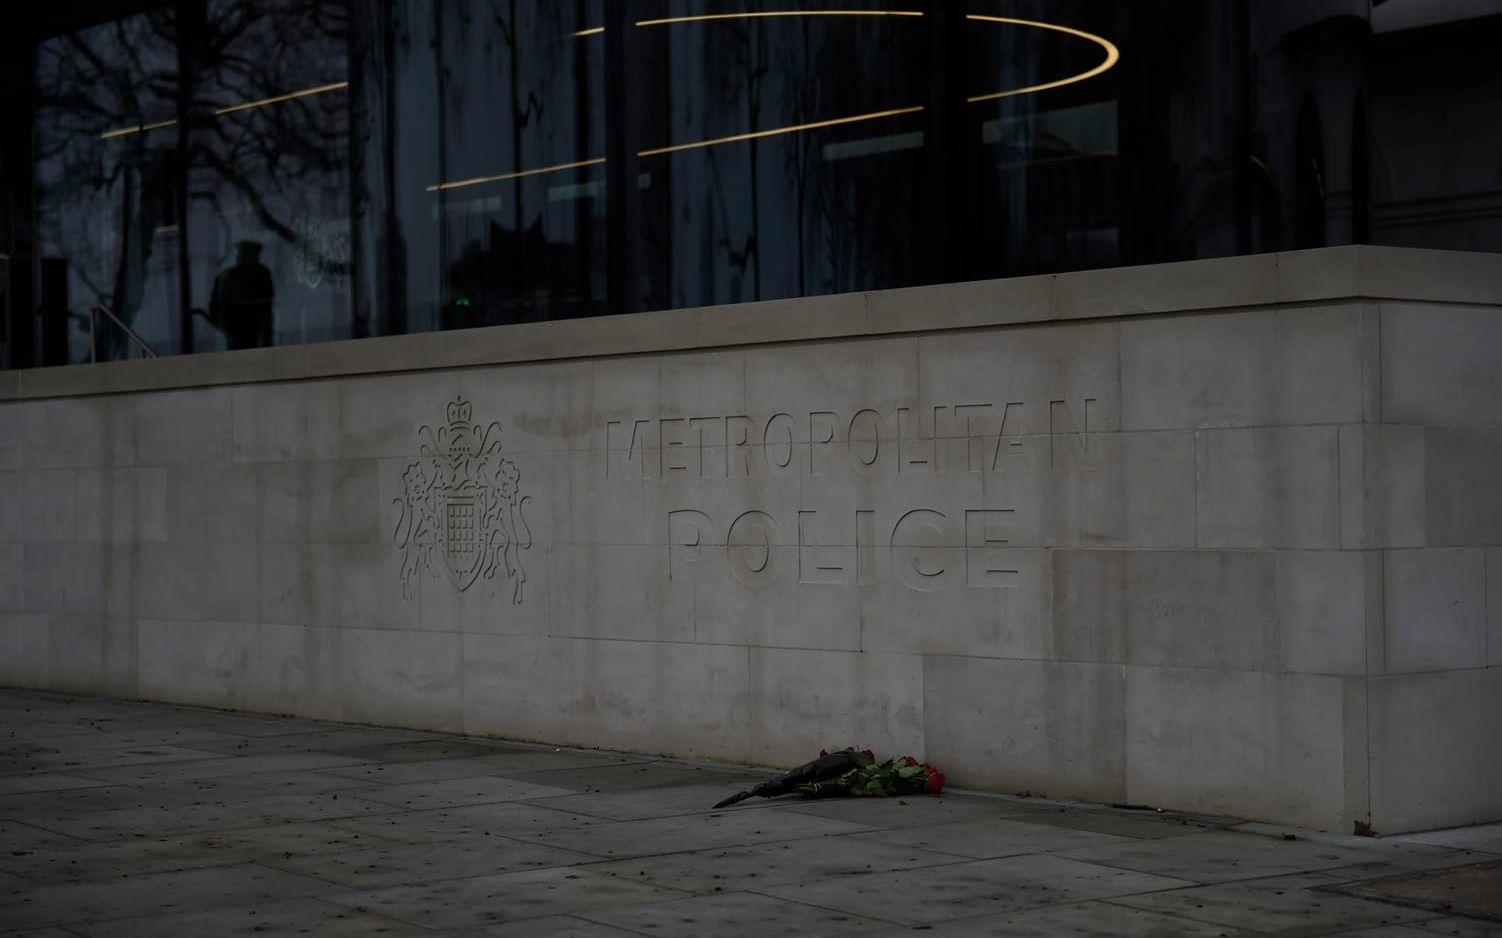 London dagen efter attacken. FOTO: Olof Ohlsson
